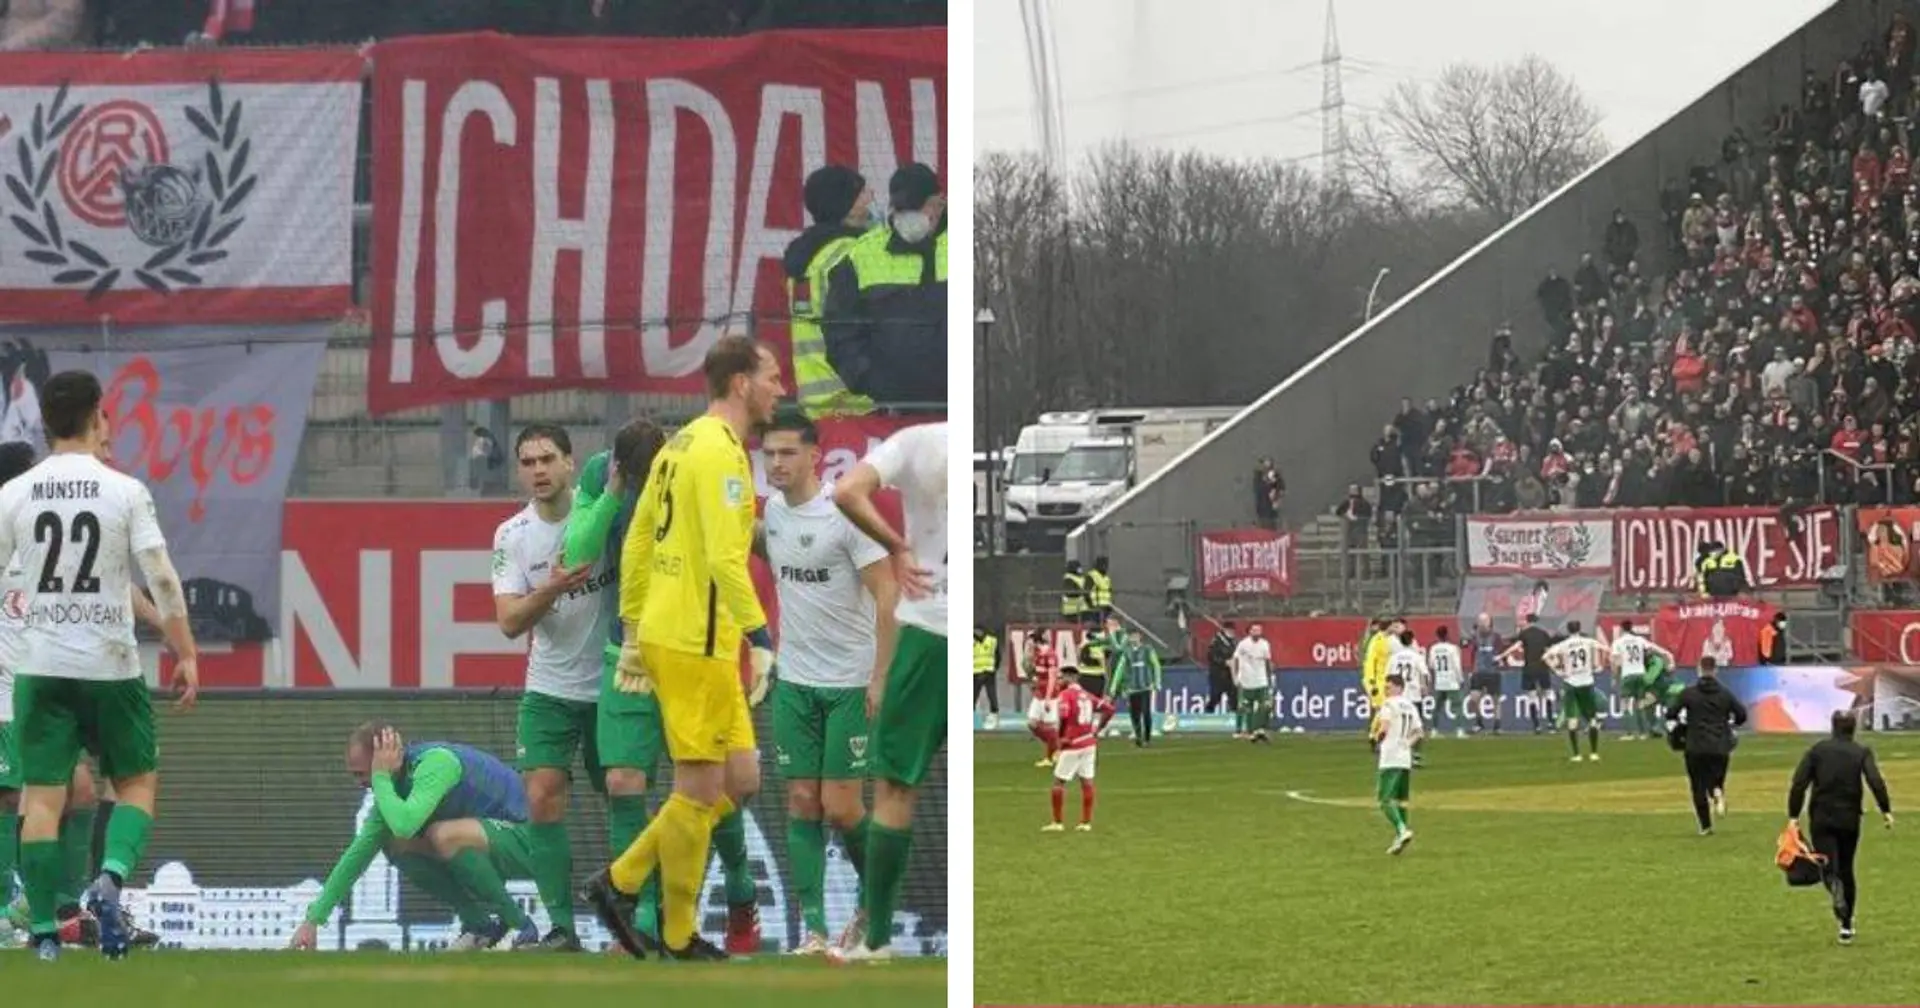 Eklat bei Rot-Weiss Essen: Chaoten verletzten mehrere Preußen-Spieler mit Böller, Spiel wird abgebrochen